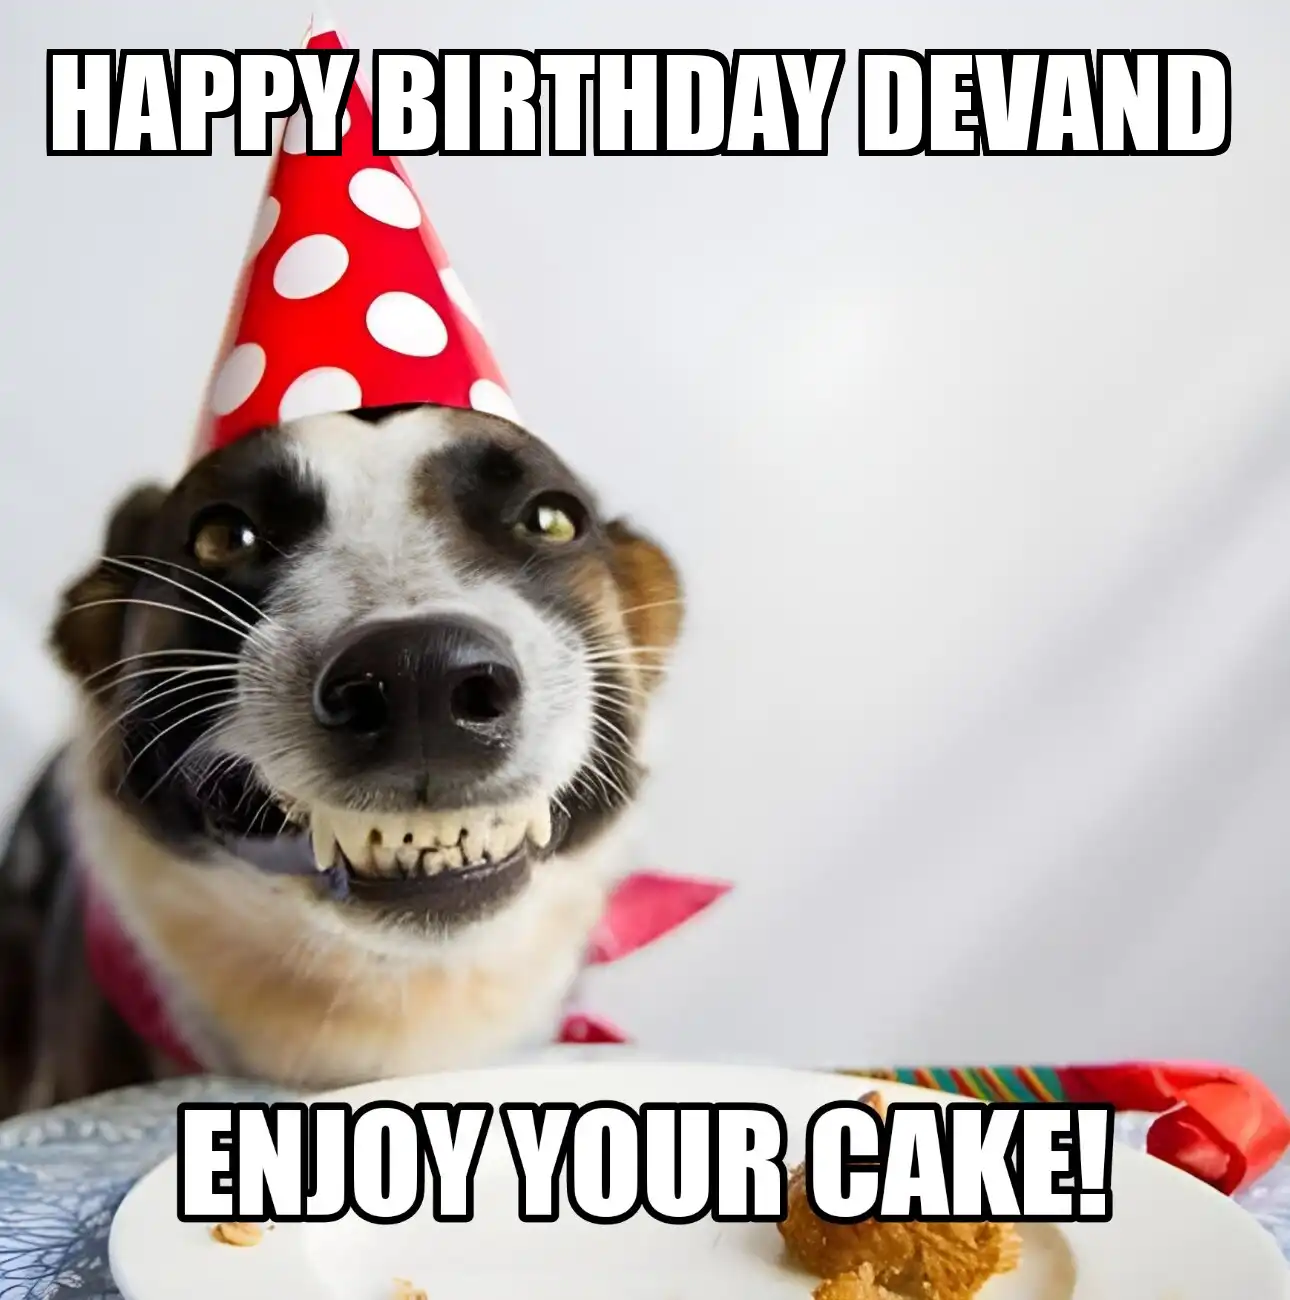 Happy Birthday Devand Enjoy Your Cake Dog Meme